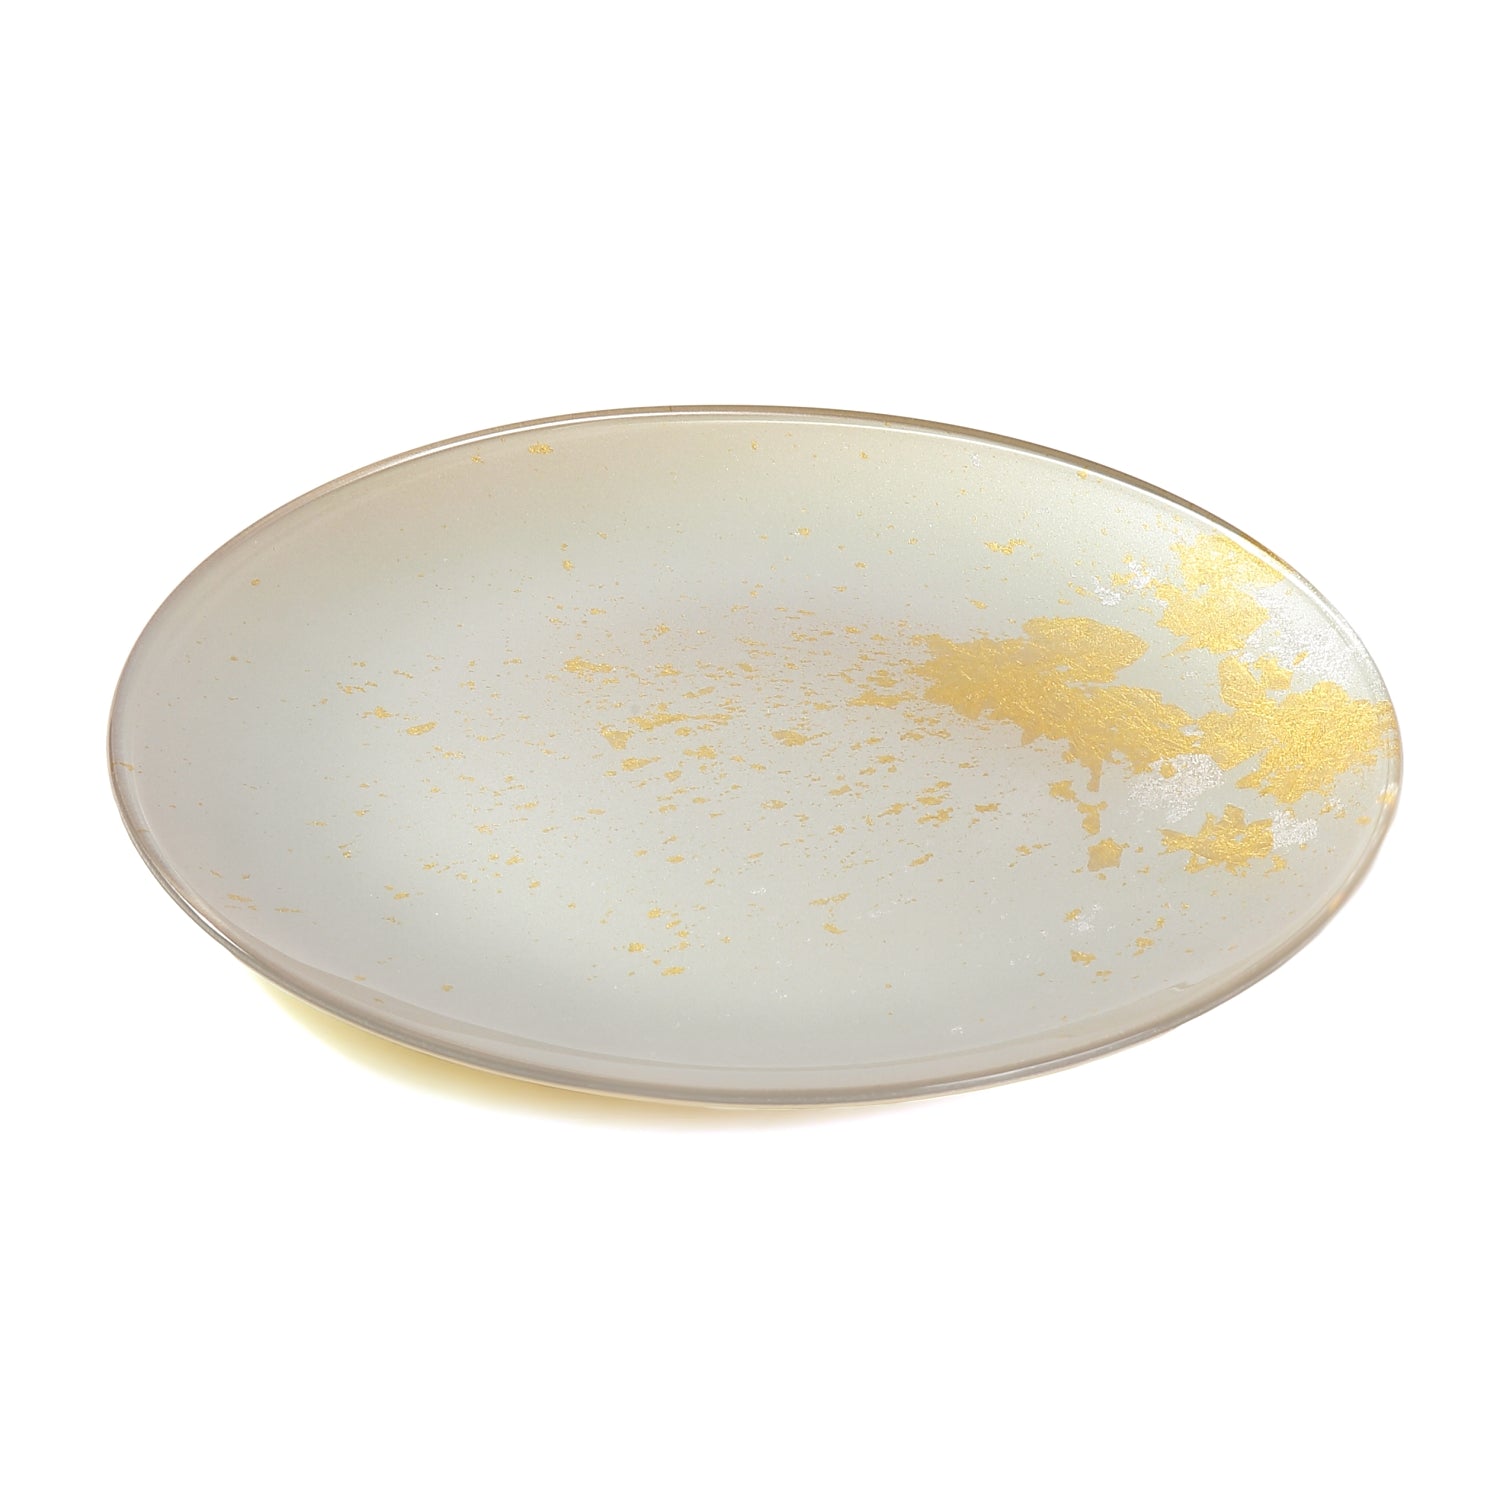 Syosaku Japanese Urushi Glass Flat Dinner Plate 11-inch (28cm) Majestic White with Gold Leaf, Dishwasher Safe - Syosaku-Japan